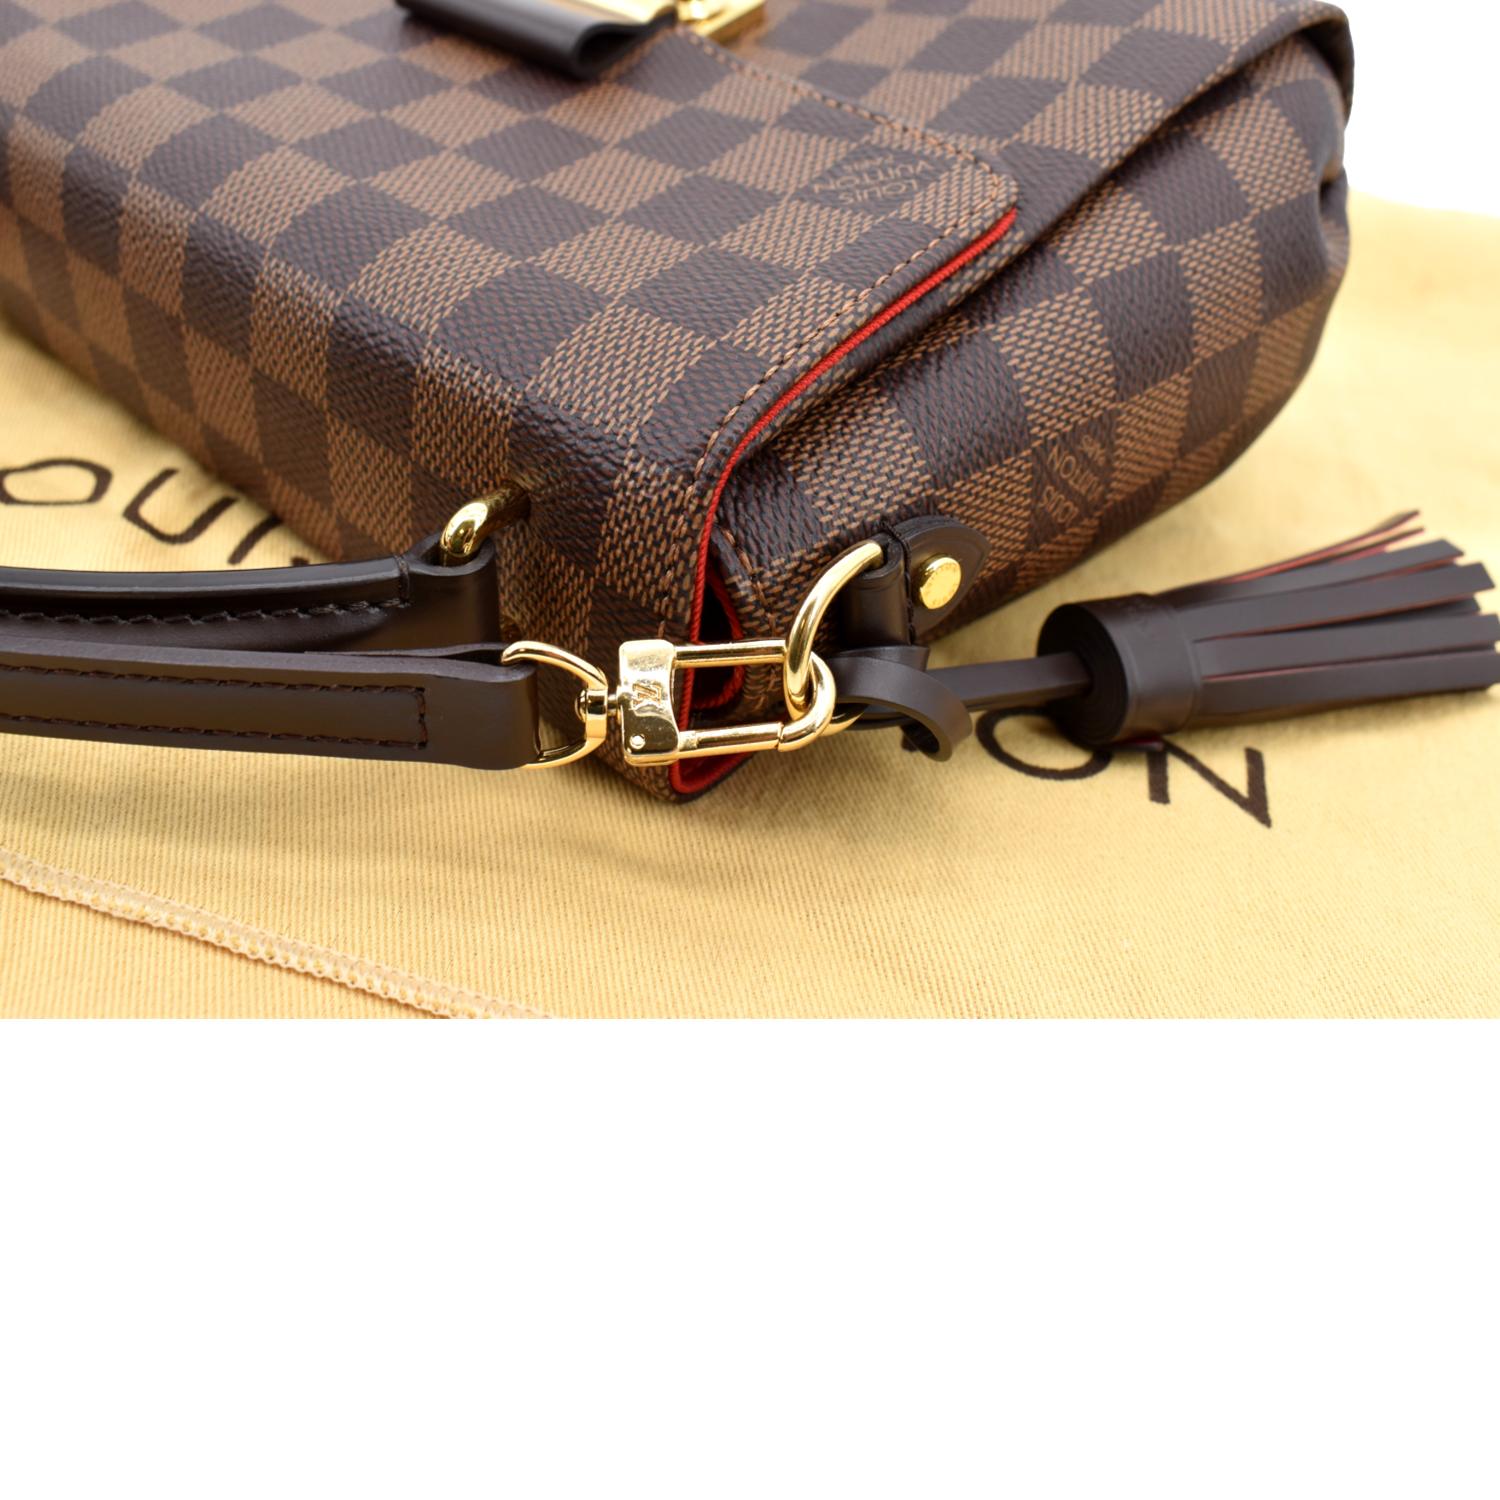 Louis Vuitton - Authenticated Croisette Handbag - Leather Brown Plain for Women, Good Condition